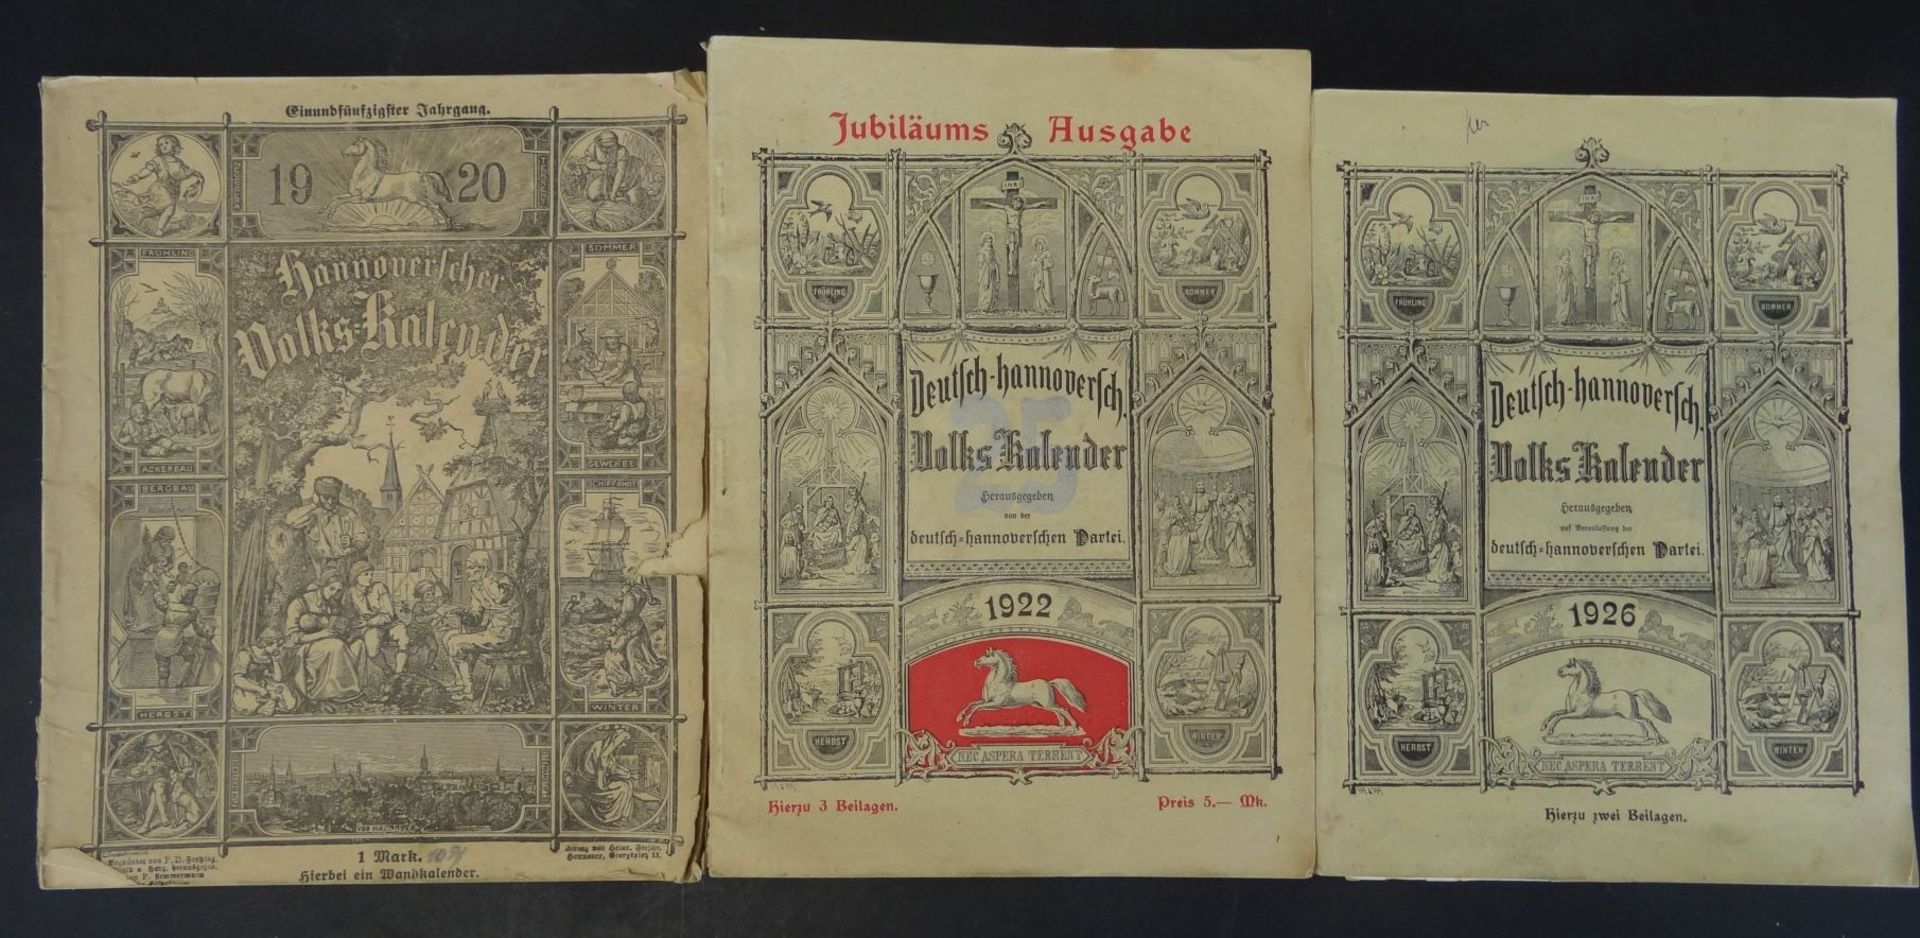 3x "Deutsch hannoverscher Volks-Kalender" , 1920-22-26